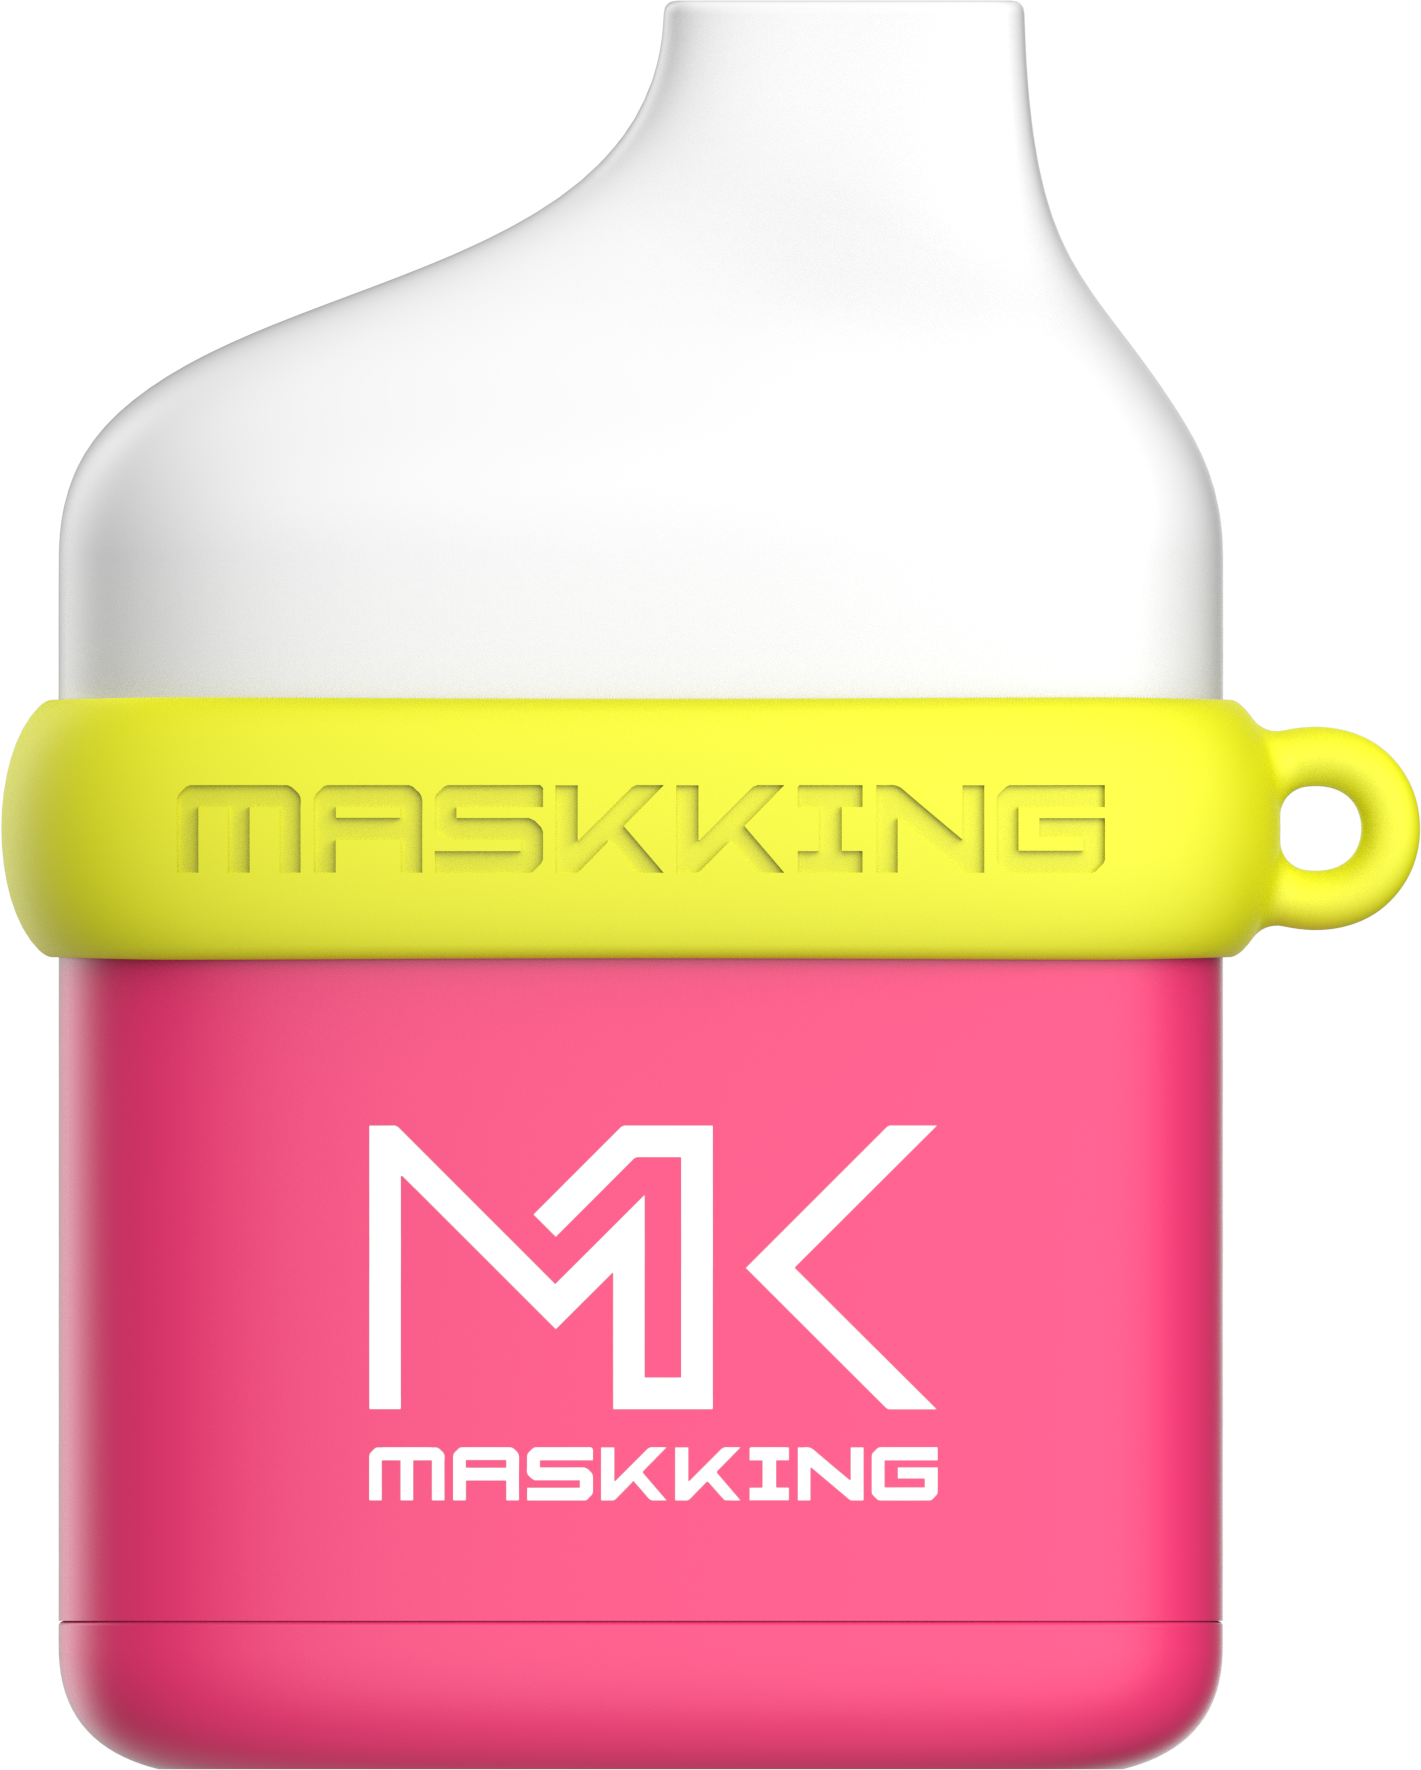 Maskking Creamy